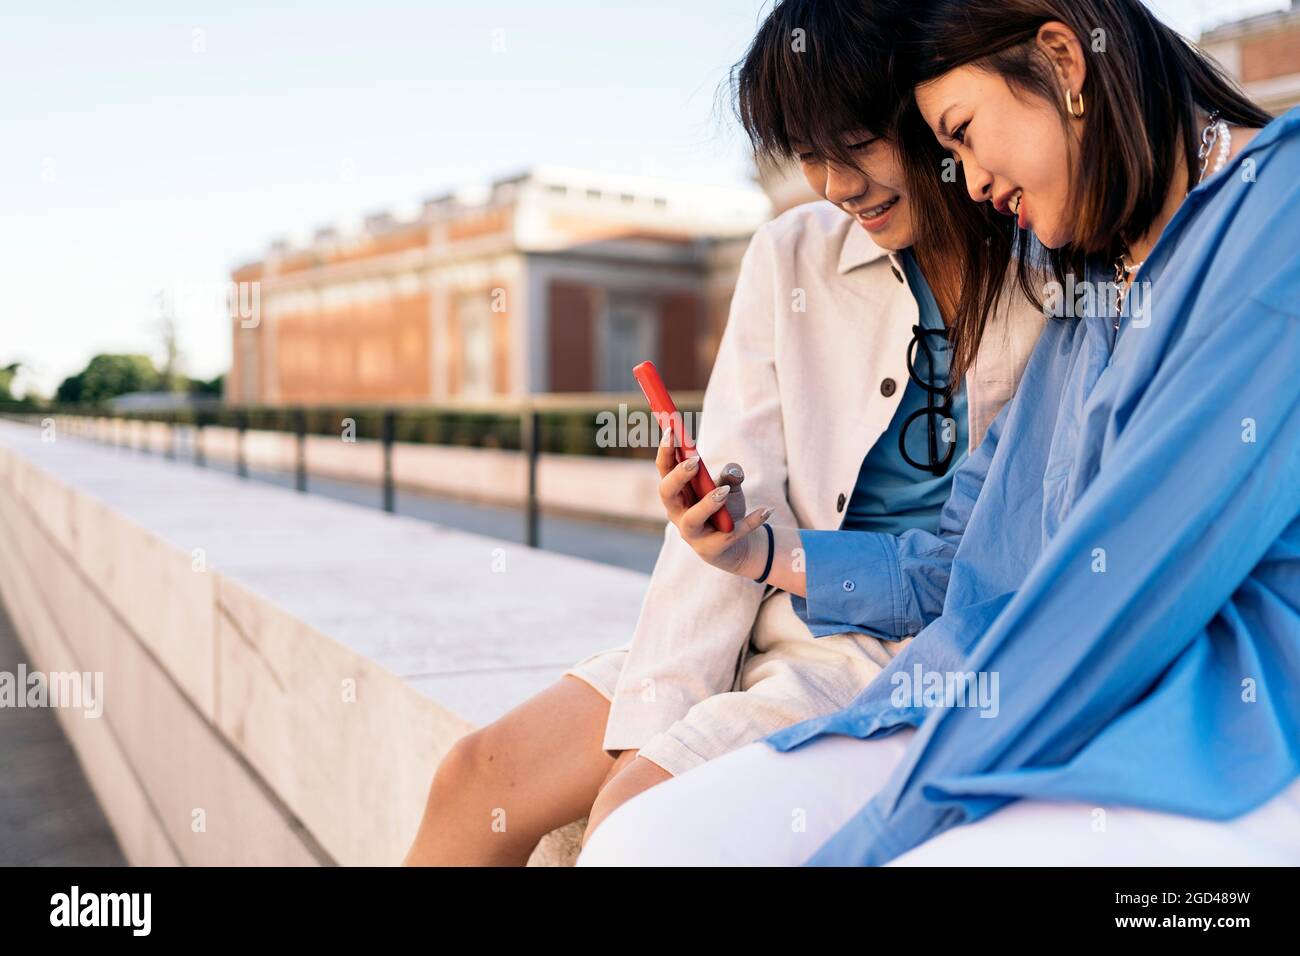 Glückliches asiatisches Paar, das zusammen auf der Straße sitzt und auf ihr Smartphone schaut. Stockfoto